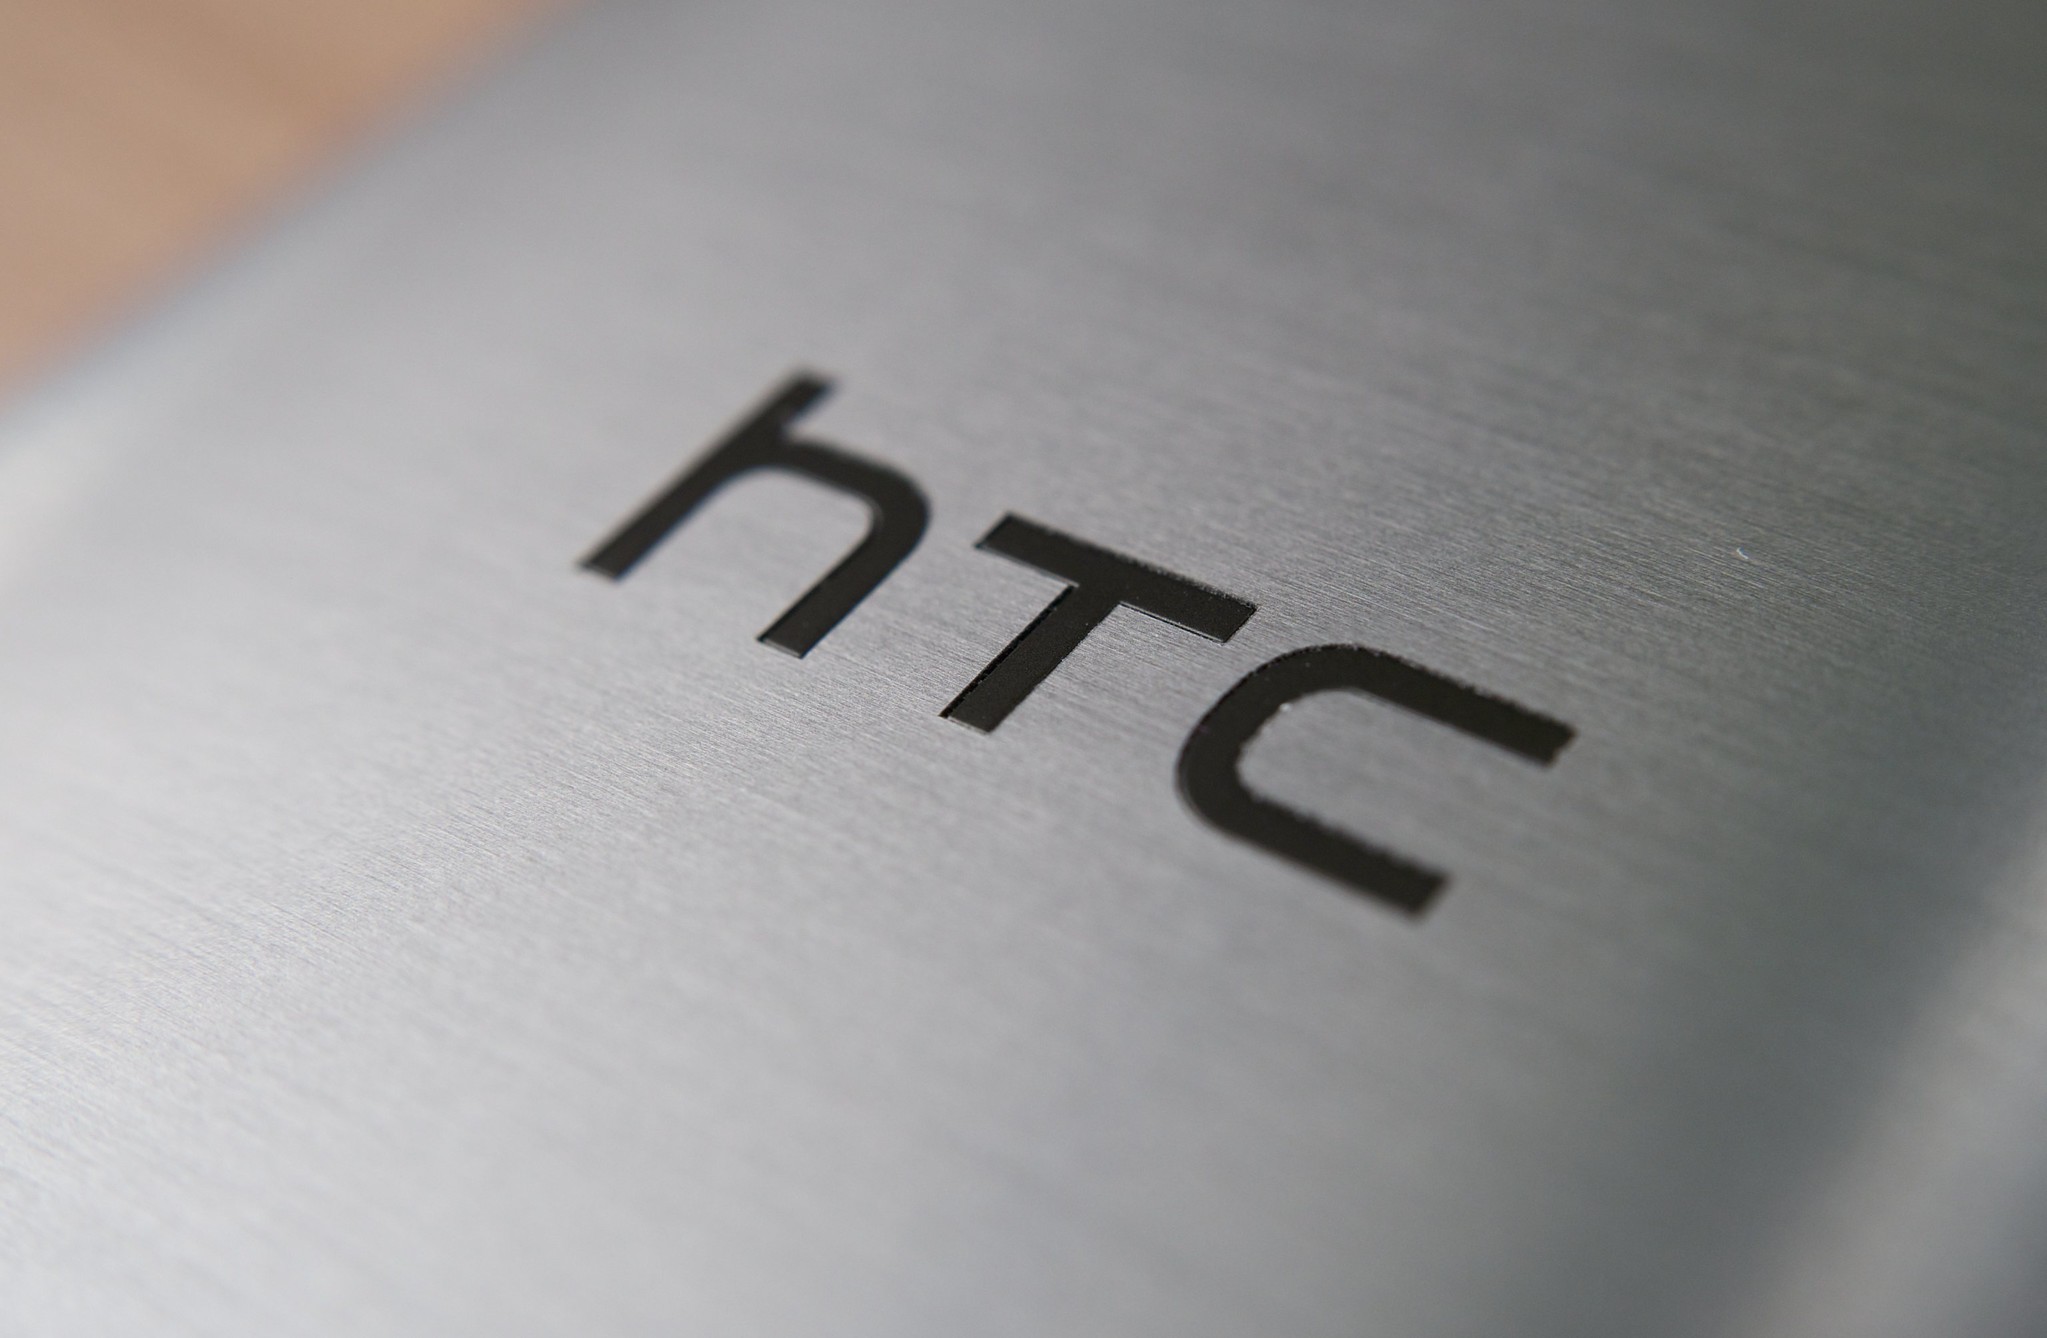 Granskning av HTC Wildfire R70-smartphone med huvudegenskaper